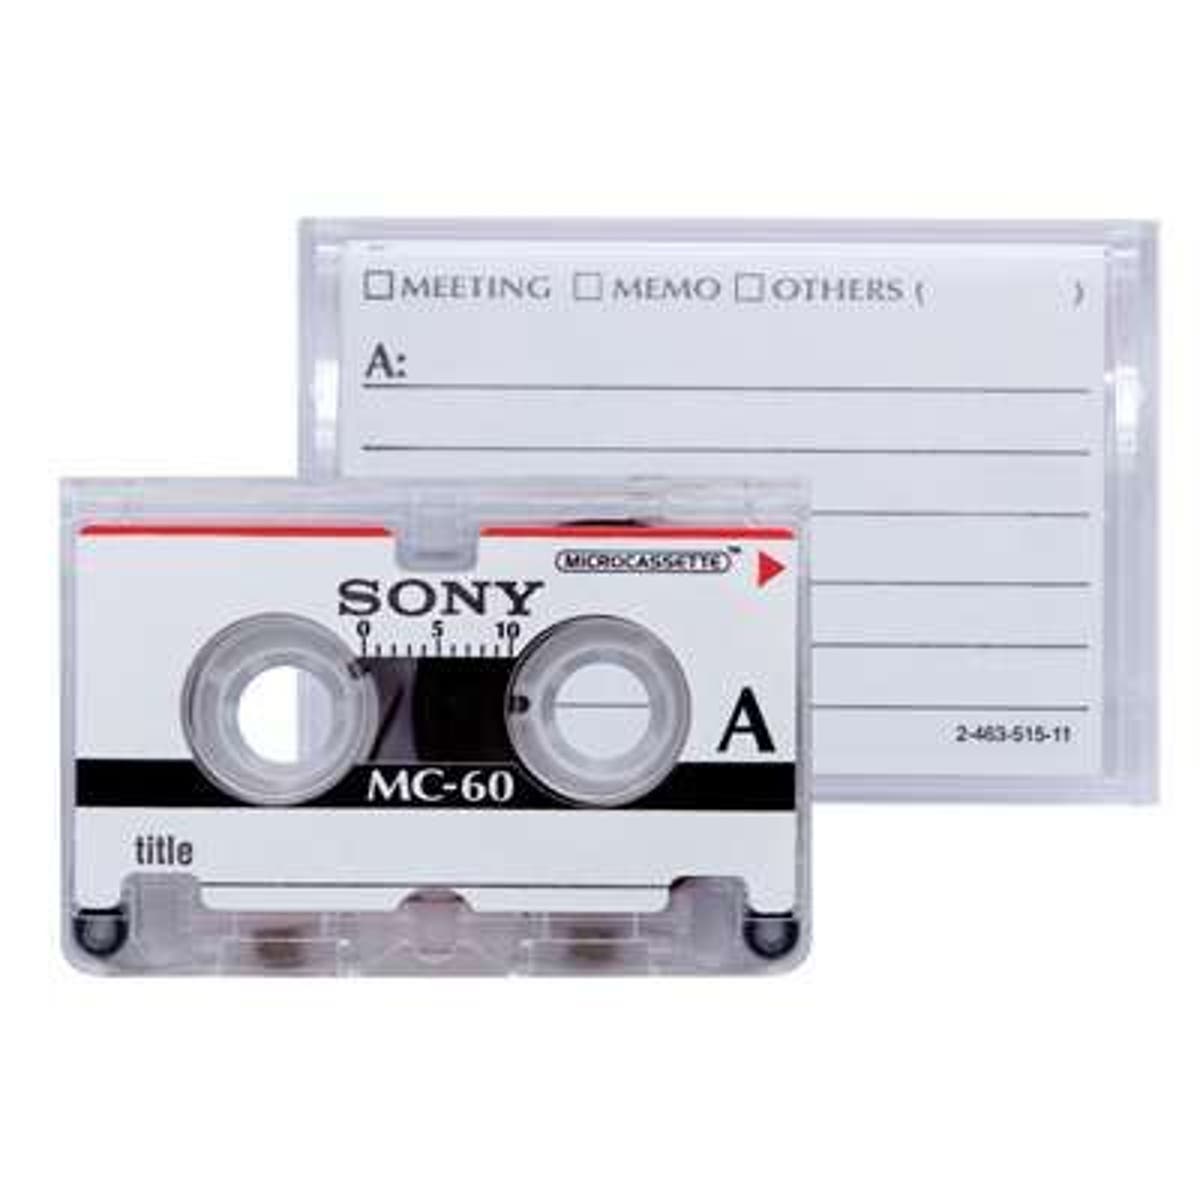 Las cintas de cassette vuelven, sus ventas son las mejores desde 2012